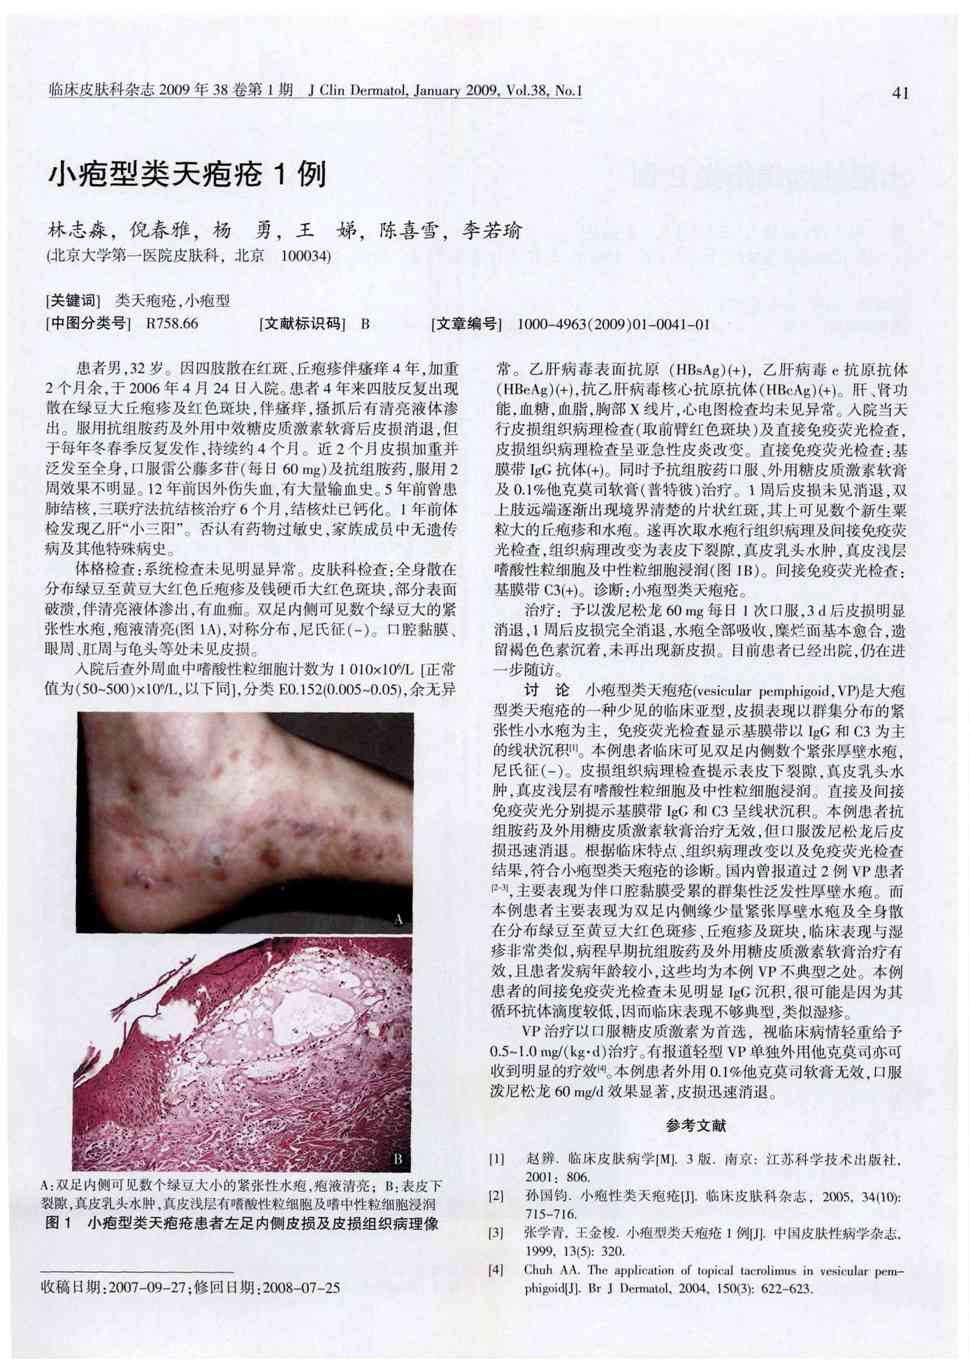 患者4年来四肢反复出现散在绿豆大丘疱疹及红色斑块,伴瘙痒,搔抓后有